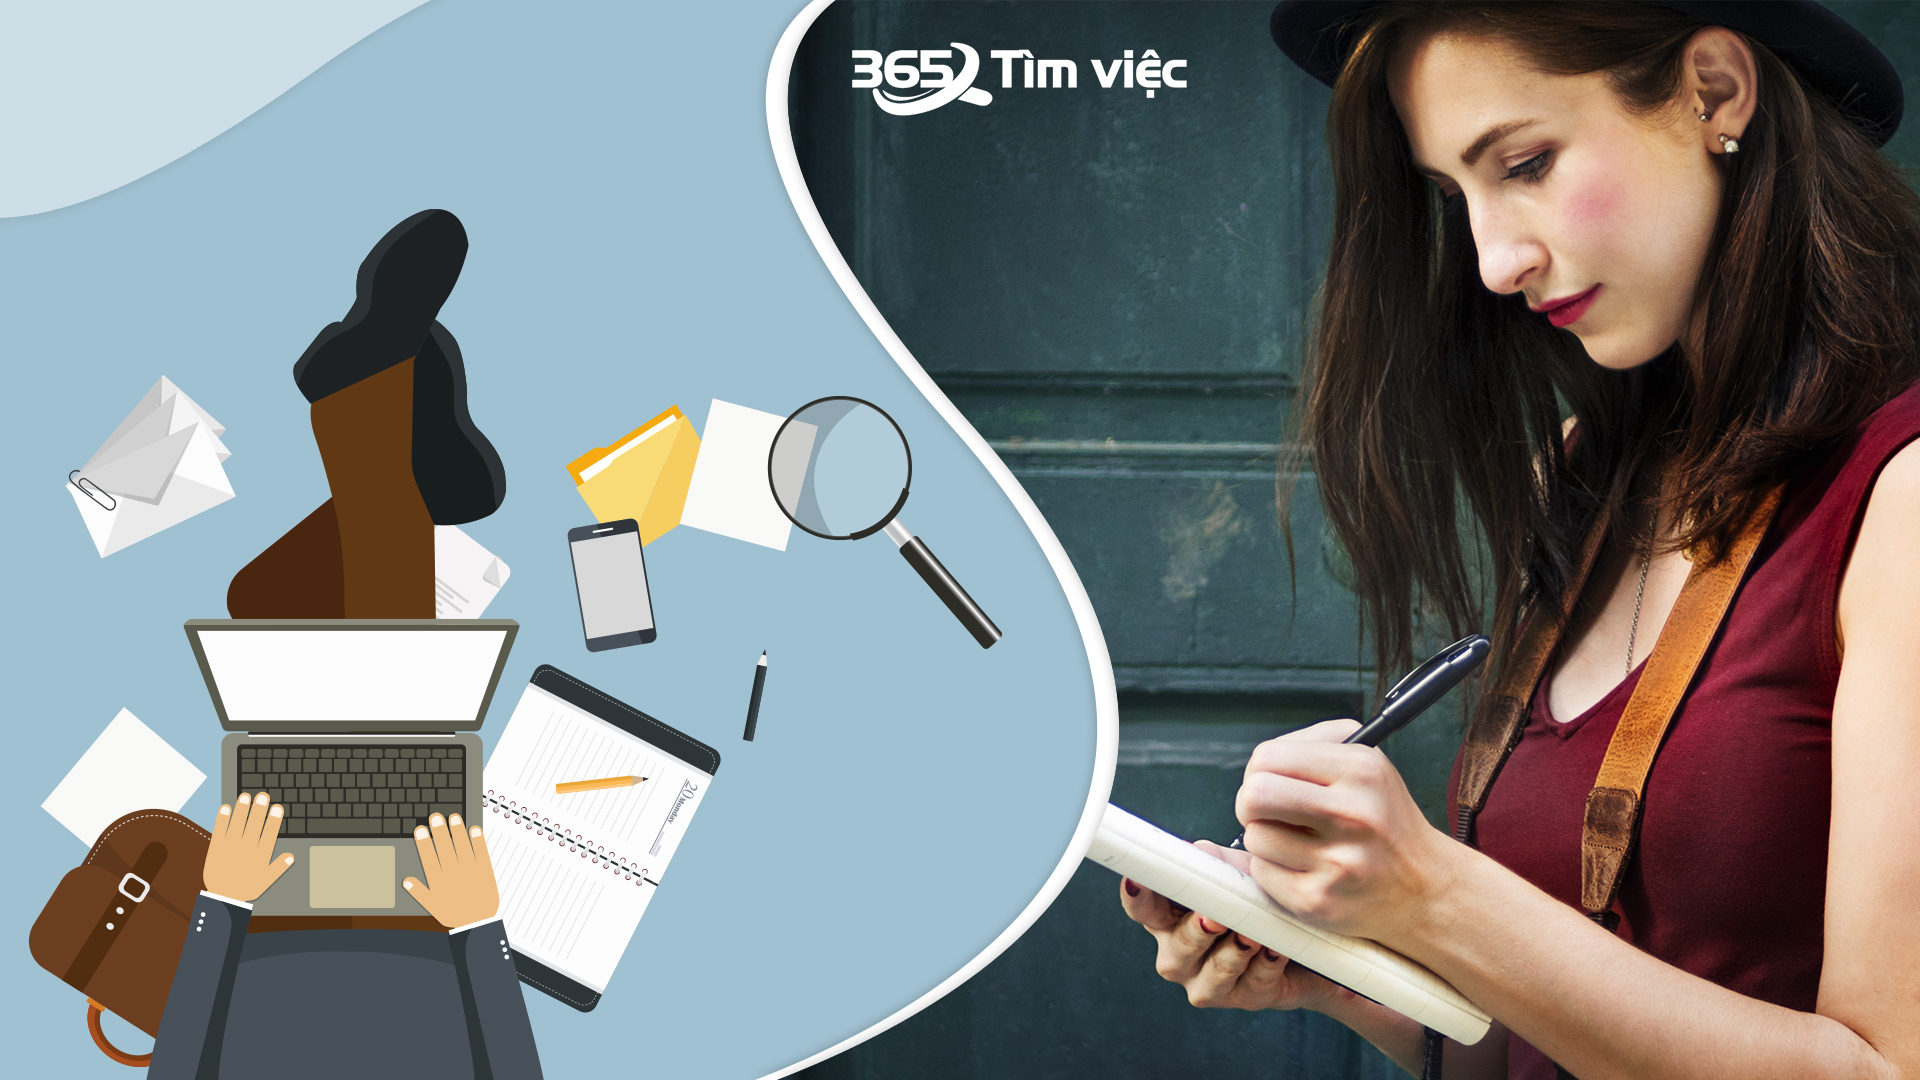 Tham khảo thương hiệu uy tín timviec365.vn để tải mẫu biên bản huỷ hoá đơn